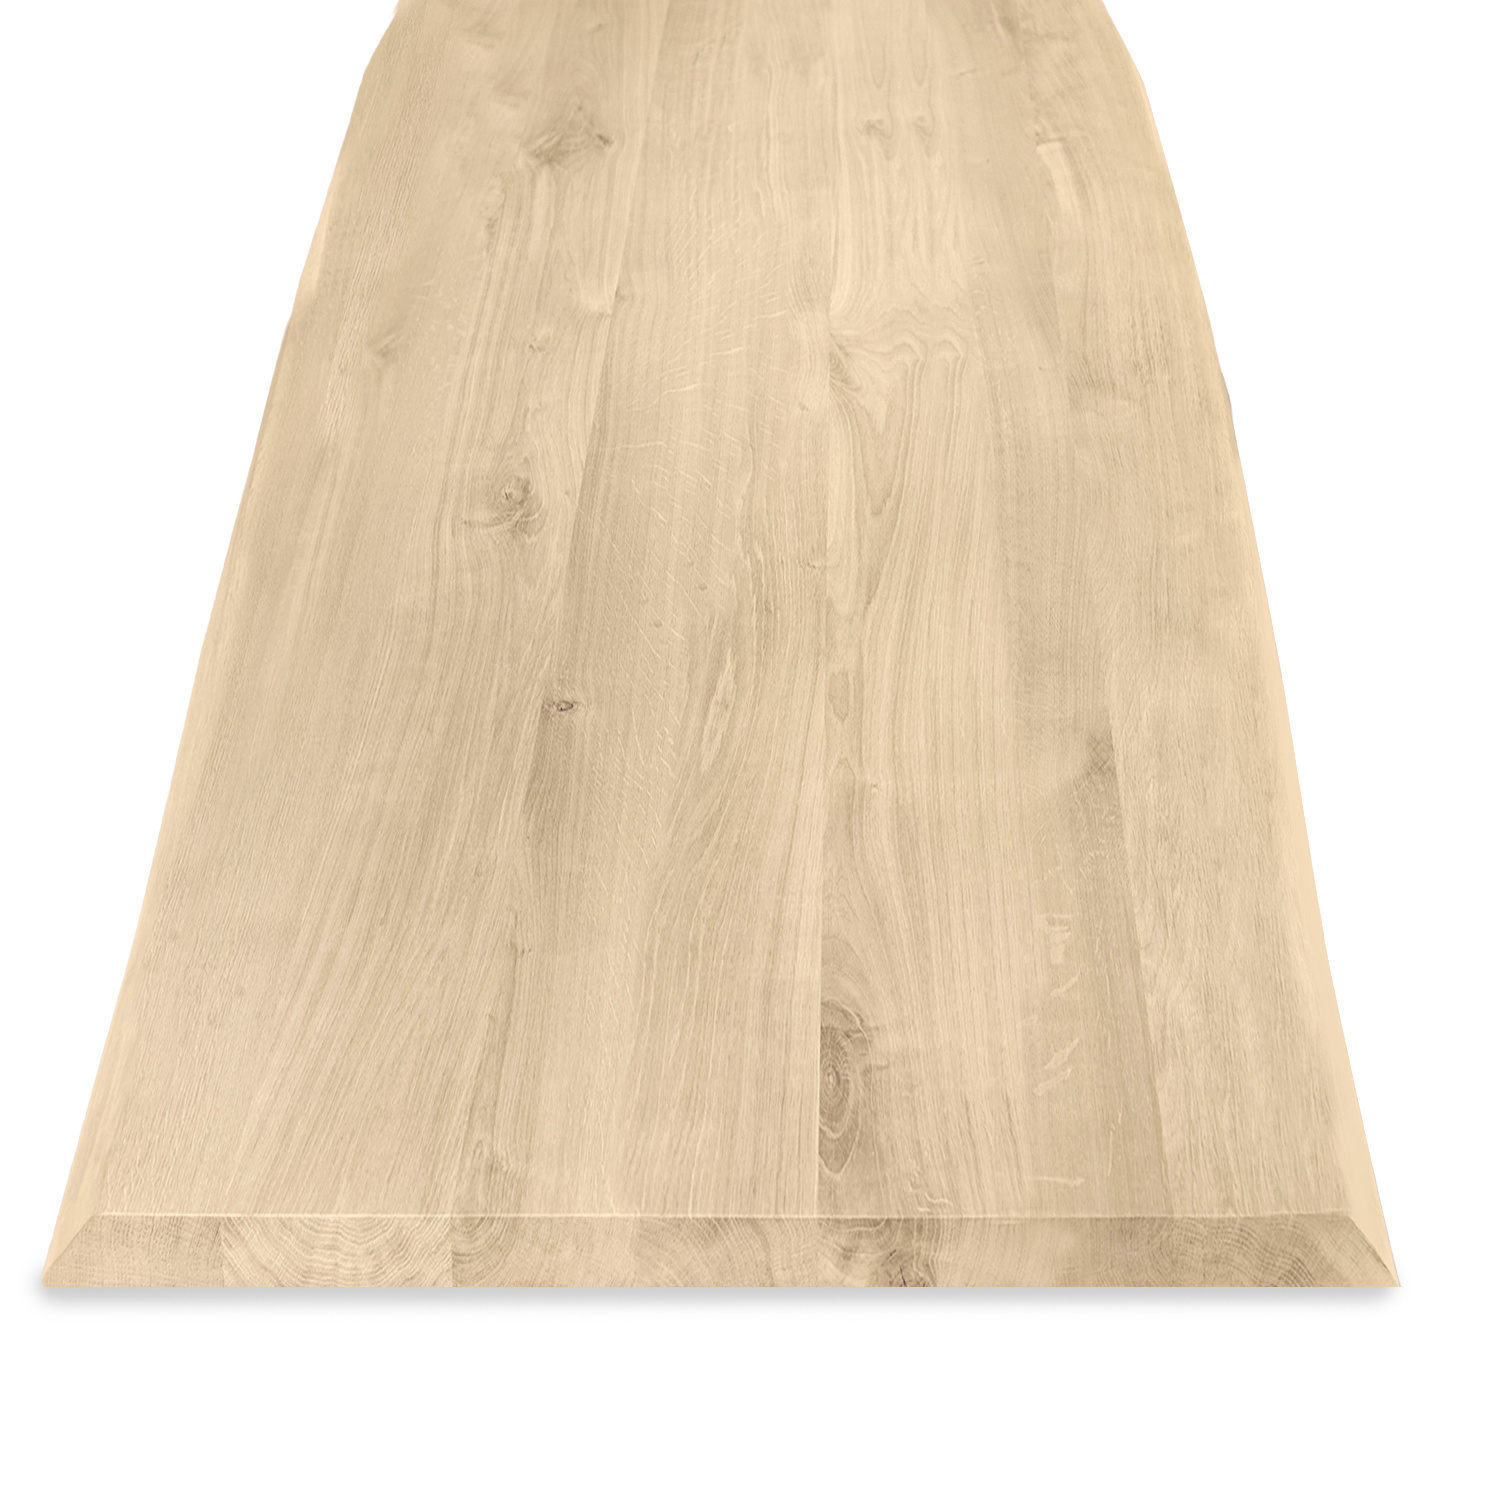  Eiken boomstam tafelblad op maat - 4 cm dik (1-laag) - met boomstam rand / waankant look - rustiek Europees eikenhout - met brede lamellen (circa 10-12 cm) - verlijmd kd 8-12% - 50-120x50-248 cm